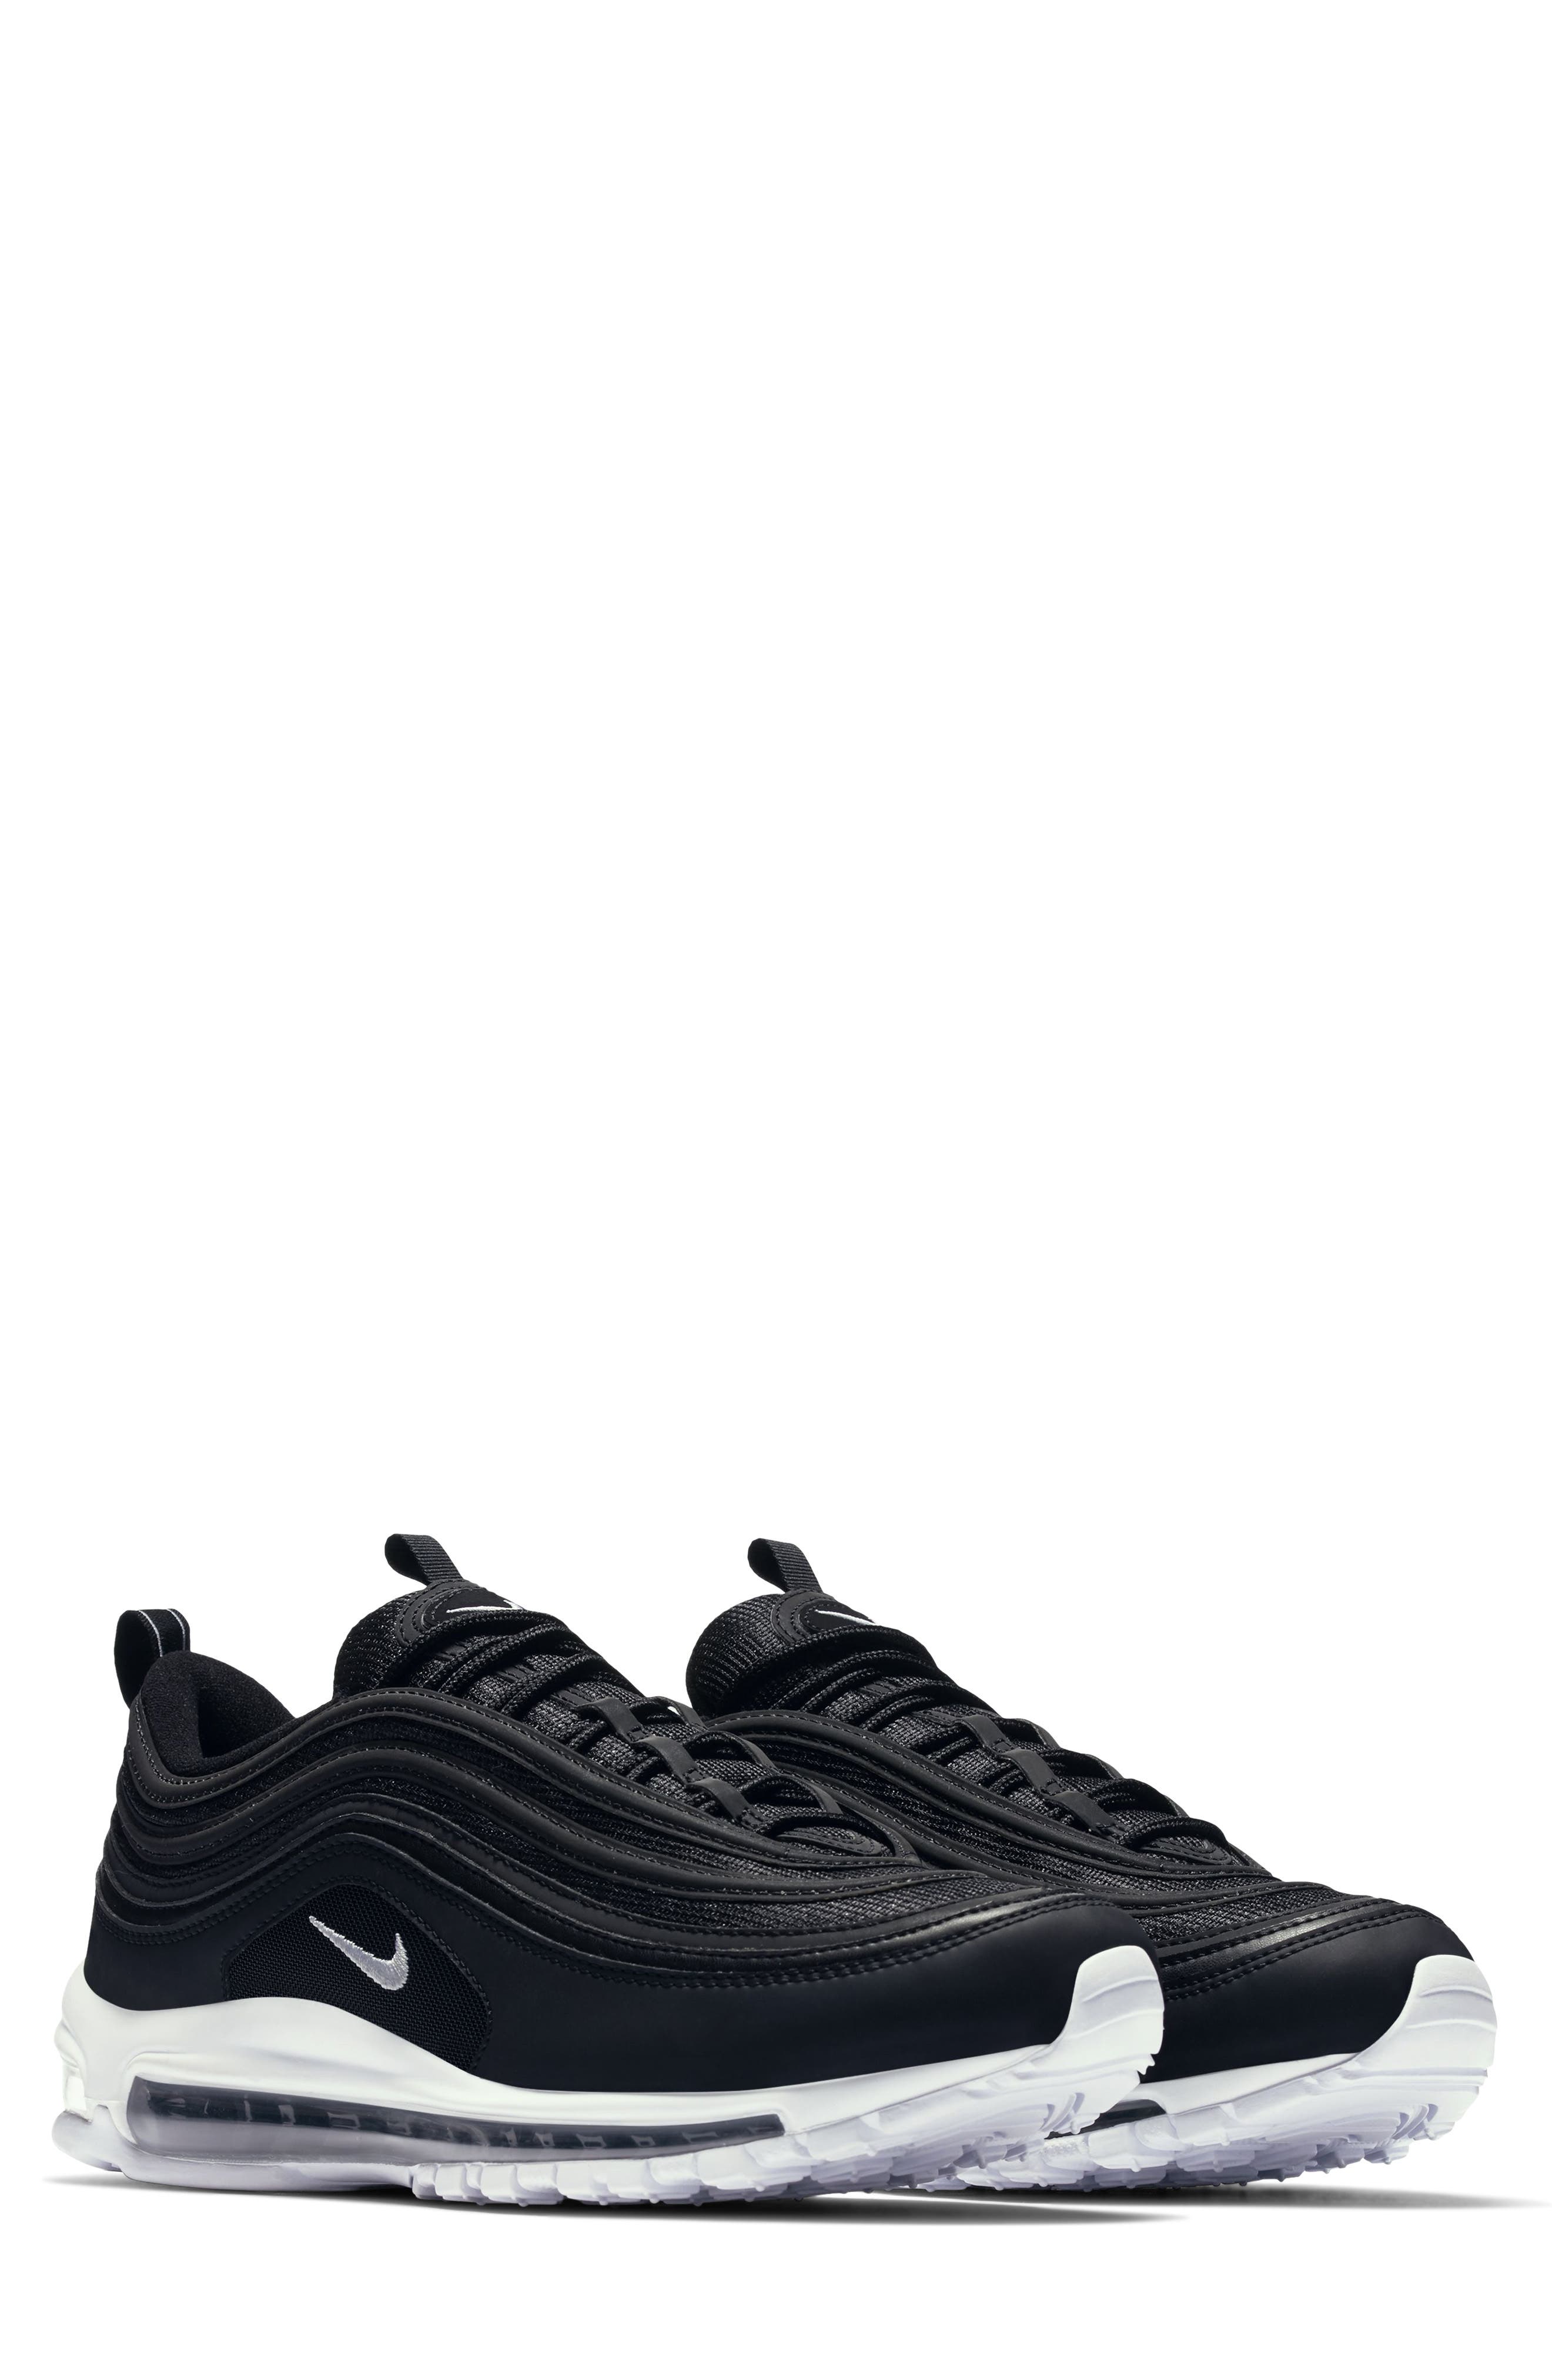 Men's Nike Air Max 97 Sneaker, Size 4 M 